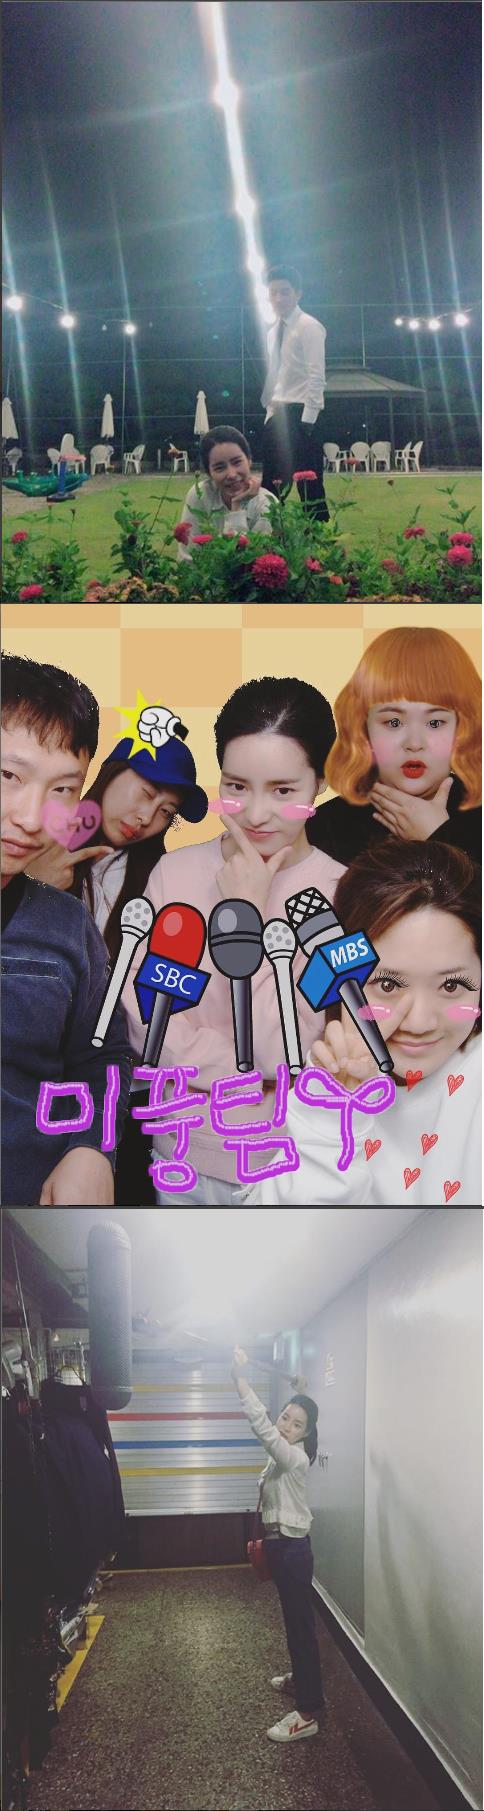 MBC 주말드라마 '불어라 미풍아' 손호준(이장고), 임지연(김미풍) 출연  /사진=임지연 인스타그램